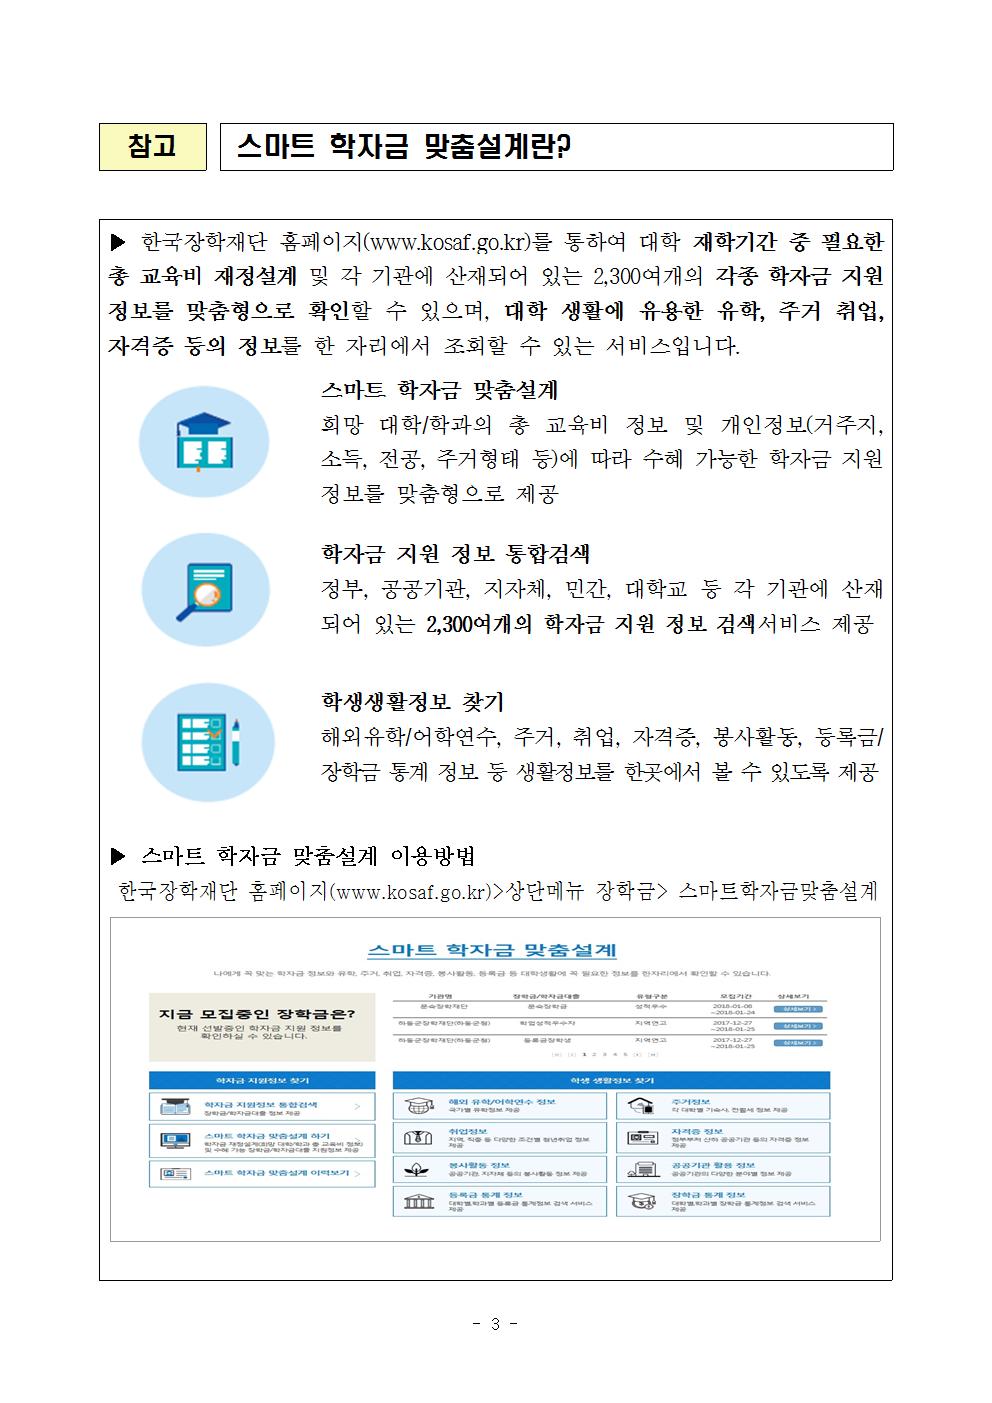 02-02(금)[보도자료] 한국장학재단, 학자금 분야 공공데이터 개방003.jpg